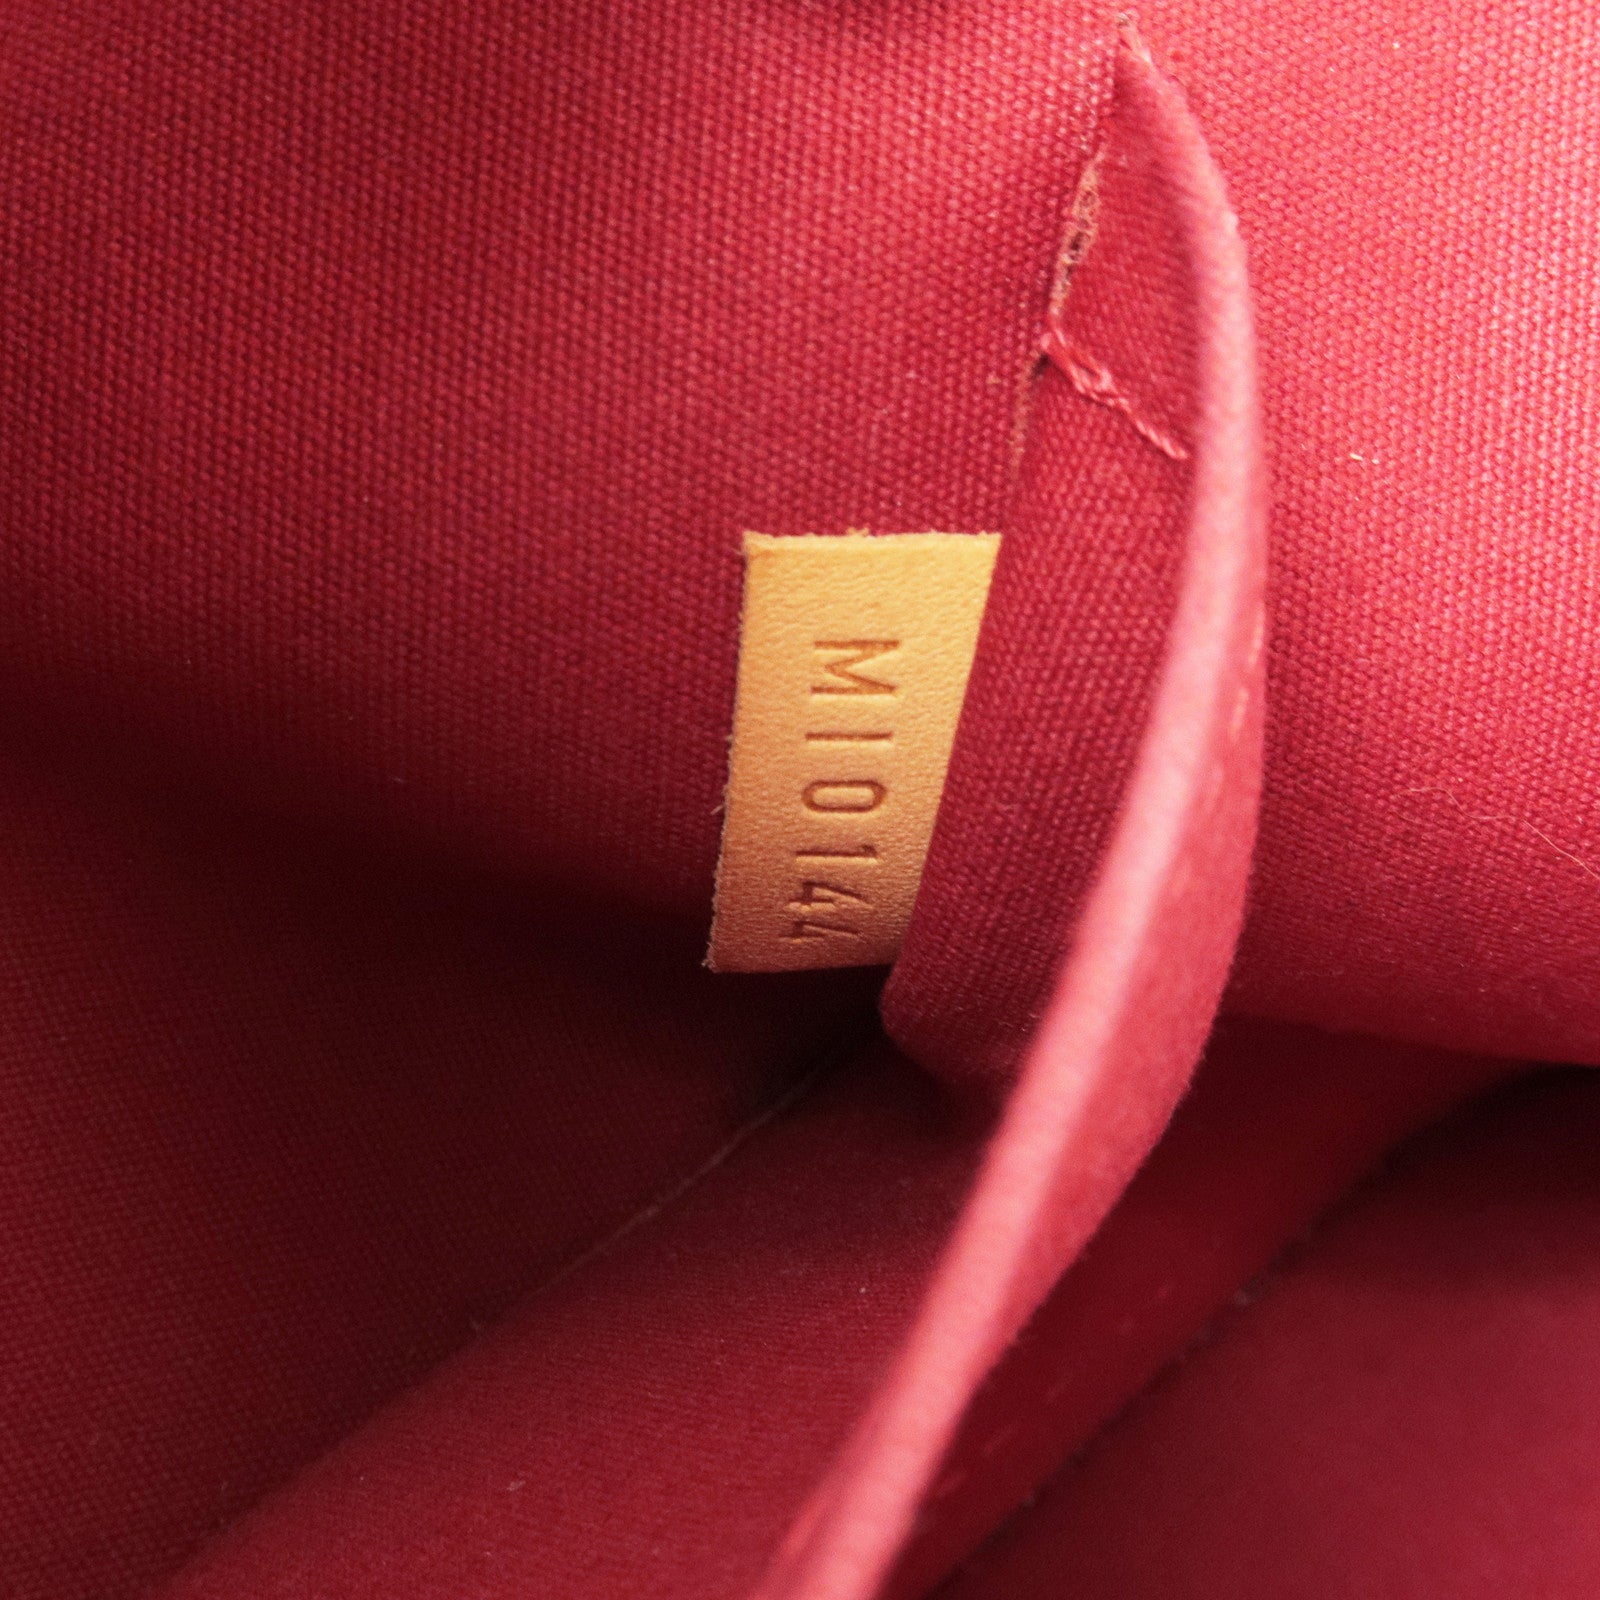 Louis Vuitton Alma Size Bb Pomme D'amour M91606 Monogram Vernis Leather